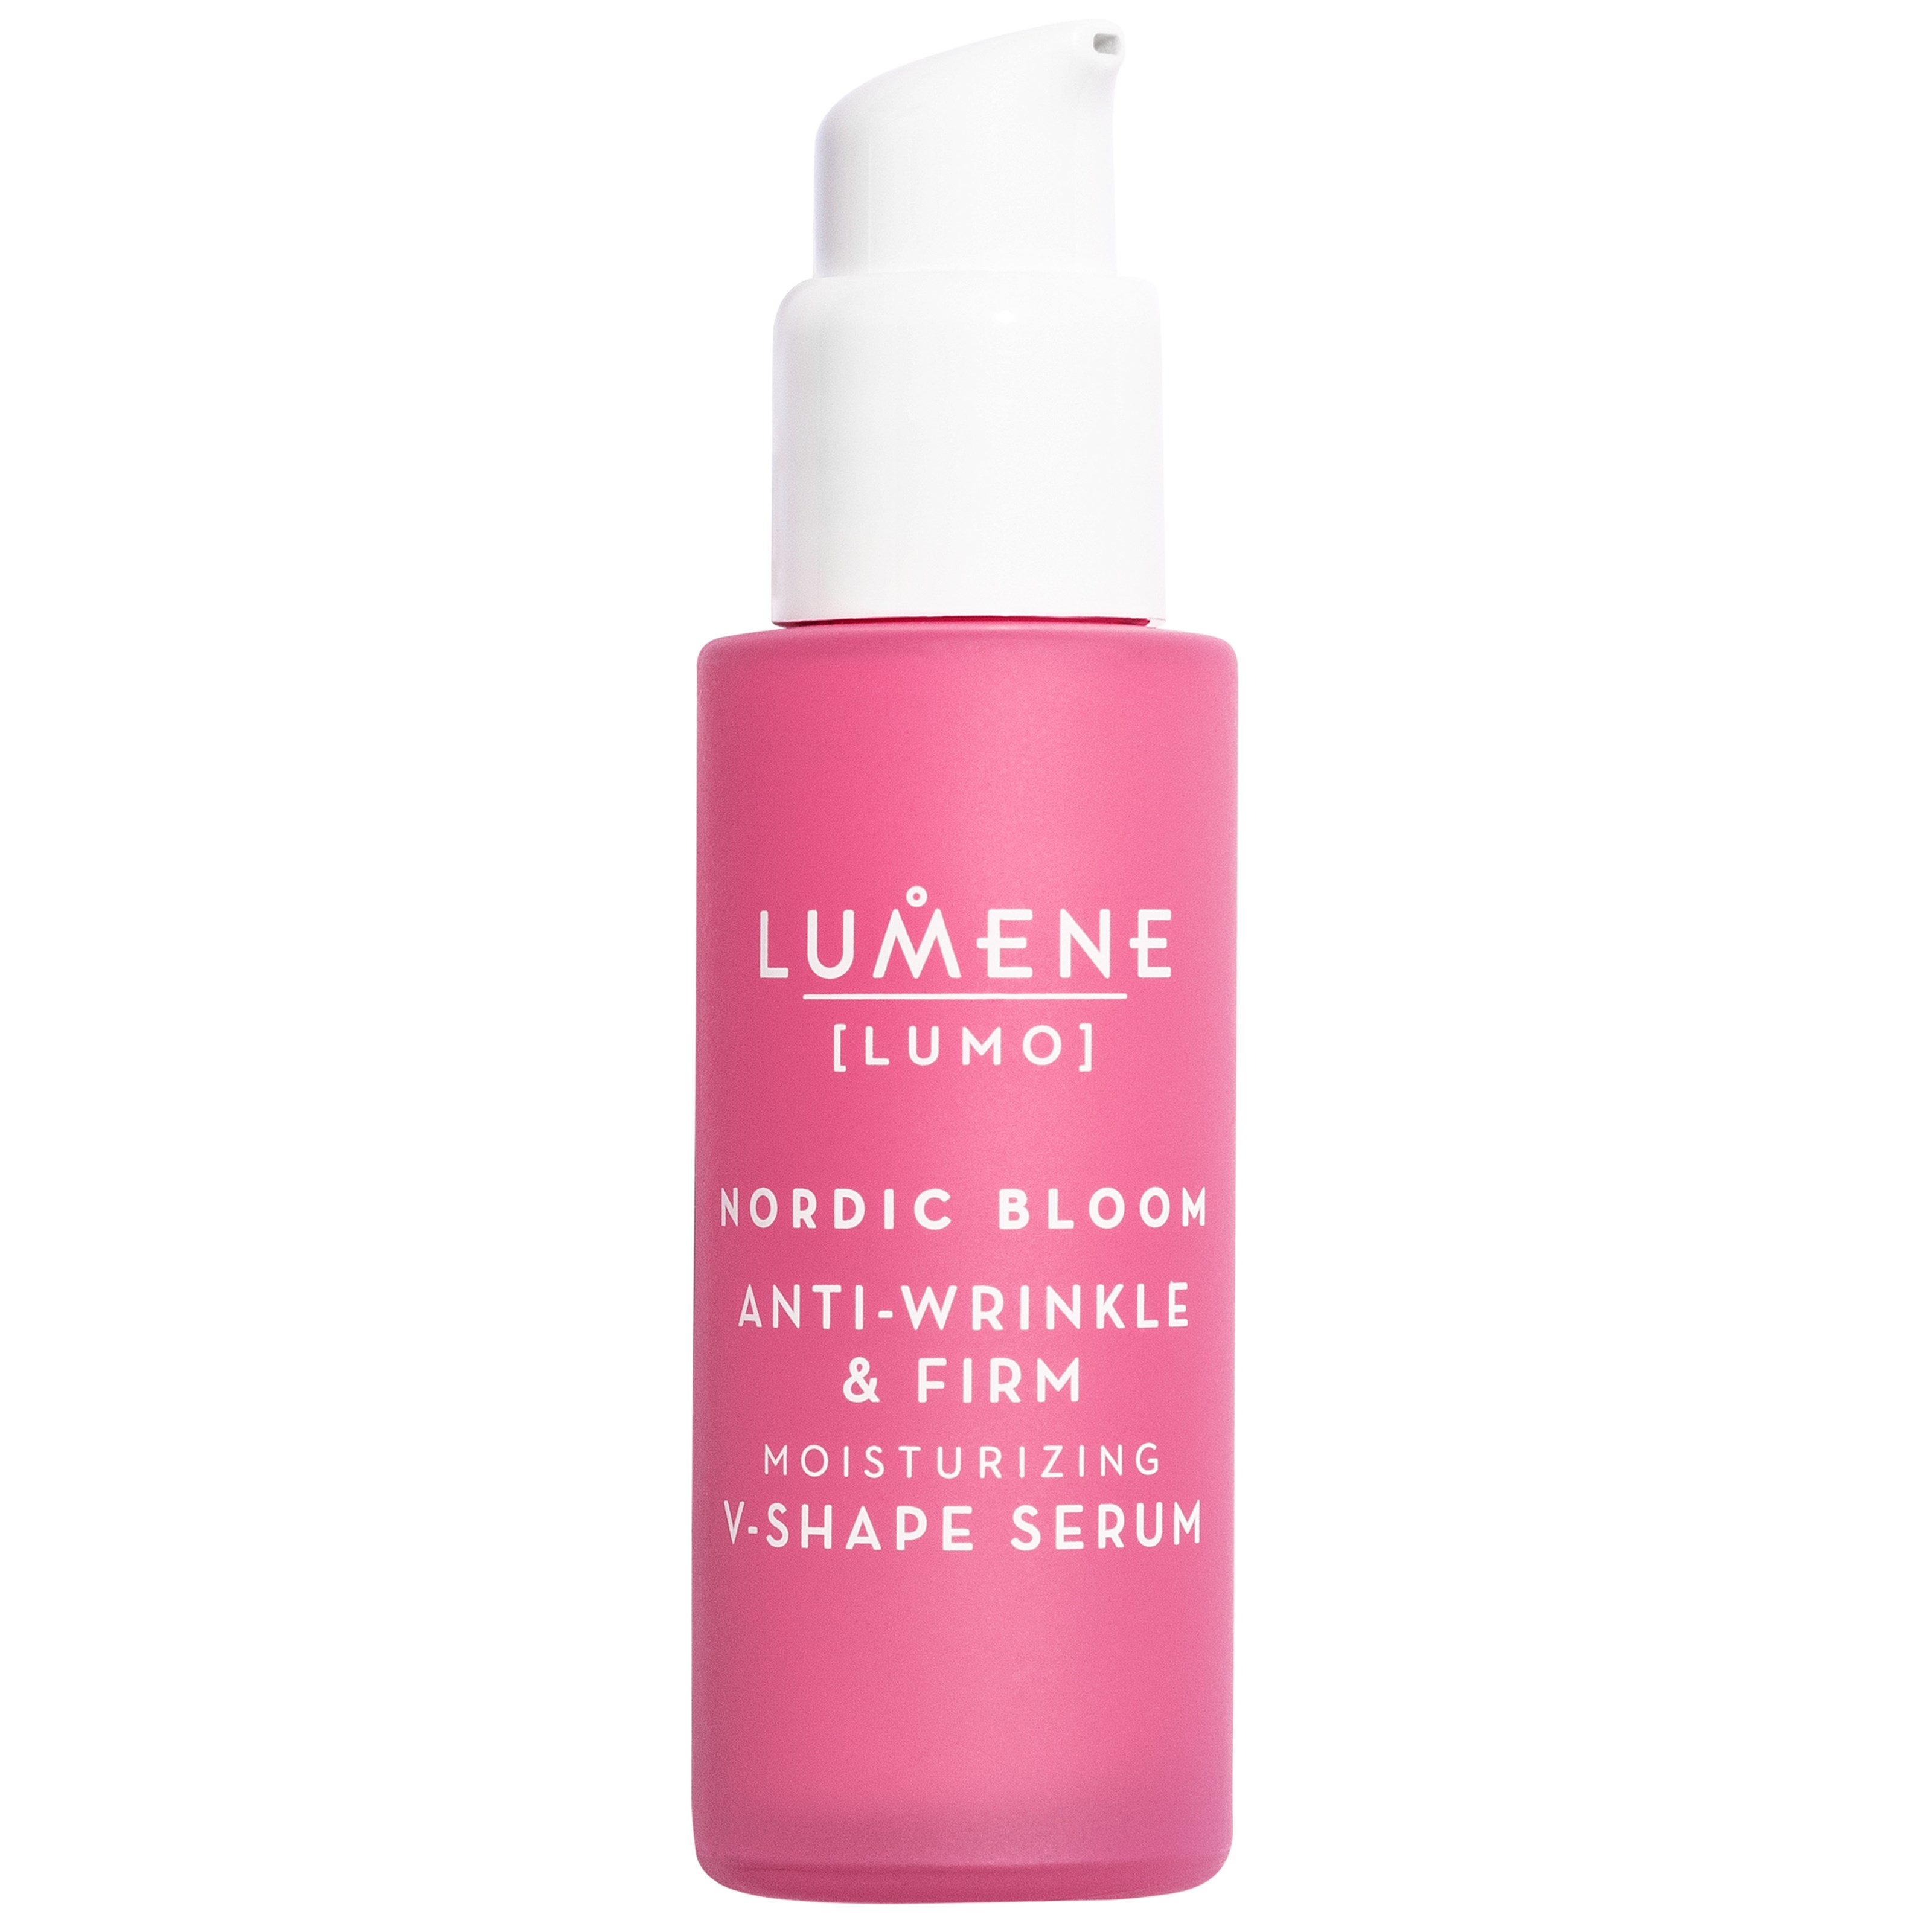 Bilde av Lumene Nordic Bloom Anti-wrinkle & Firm Moisturizing V-shape Serum 30